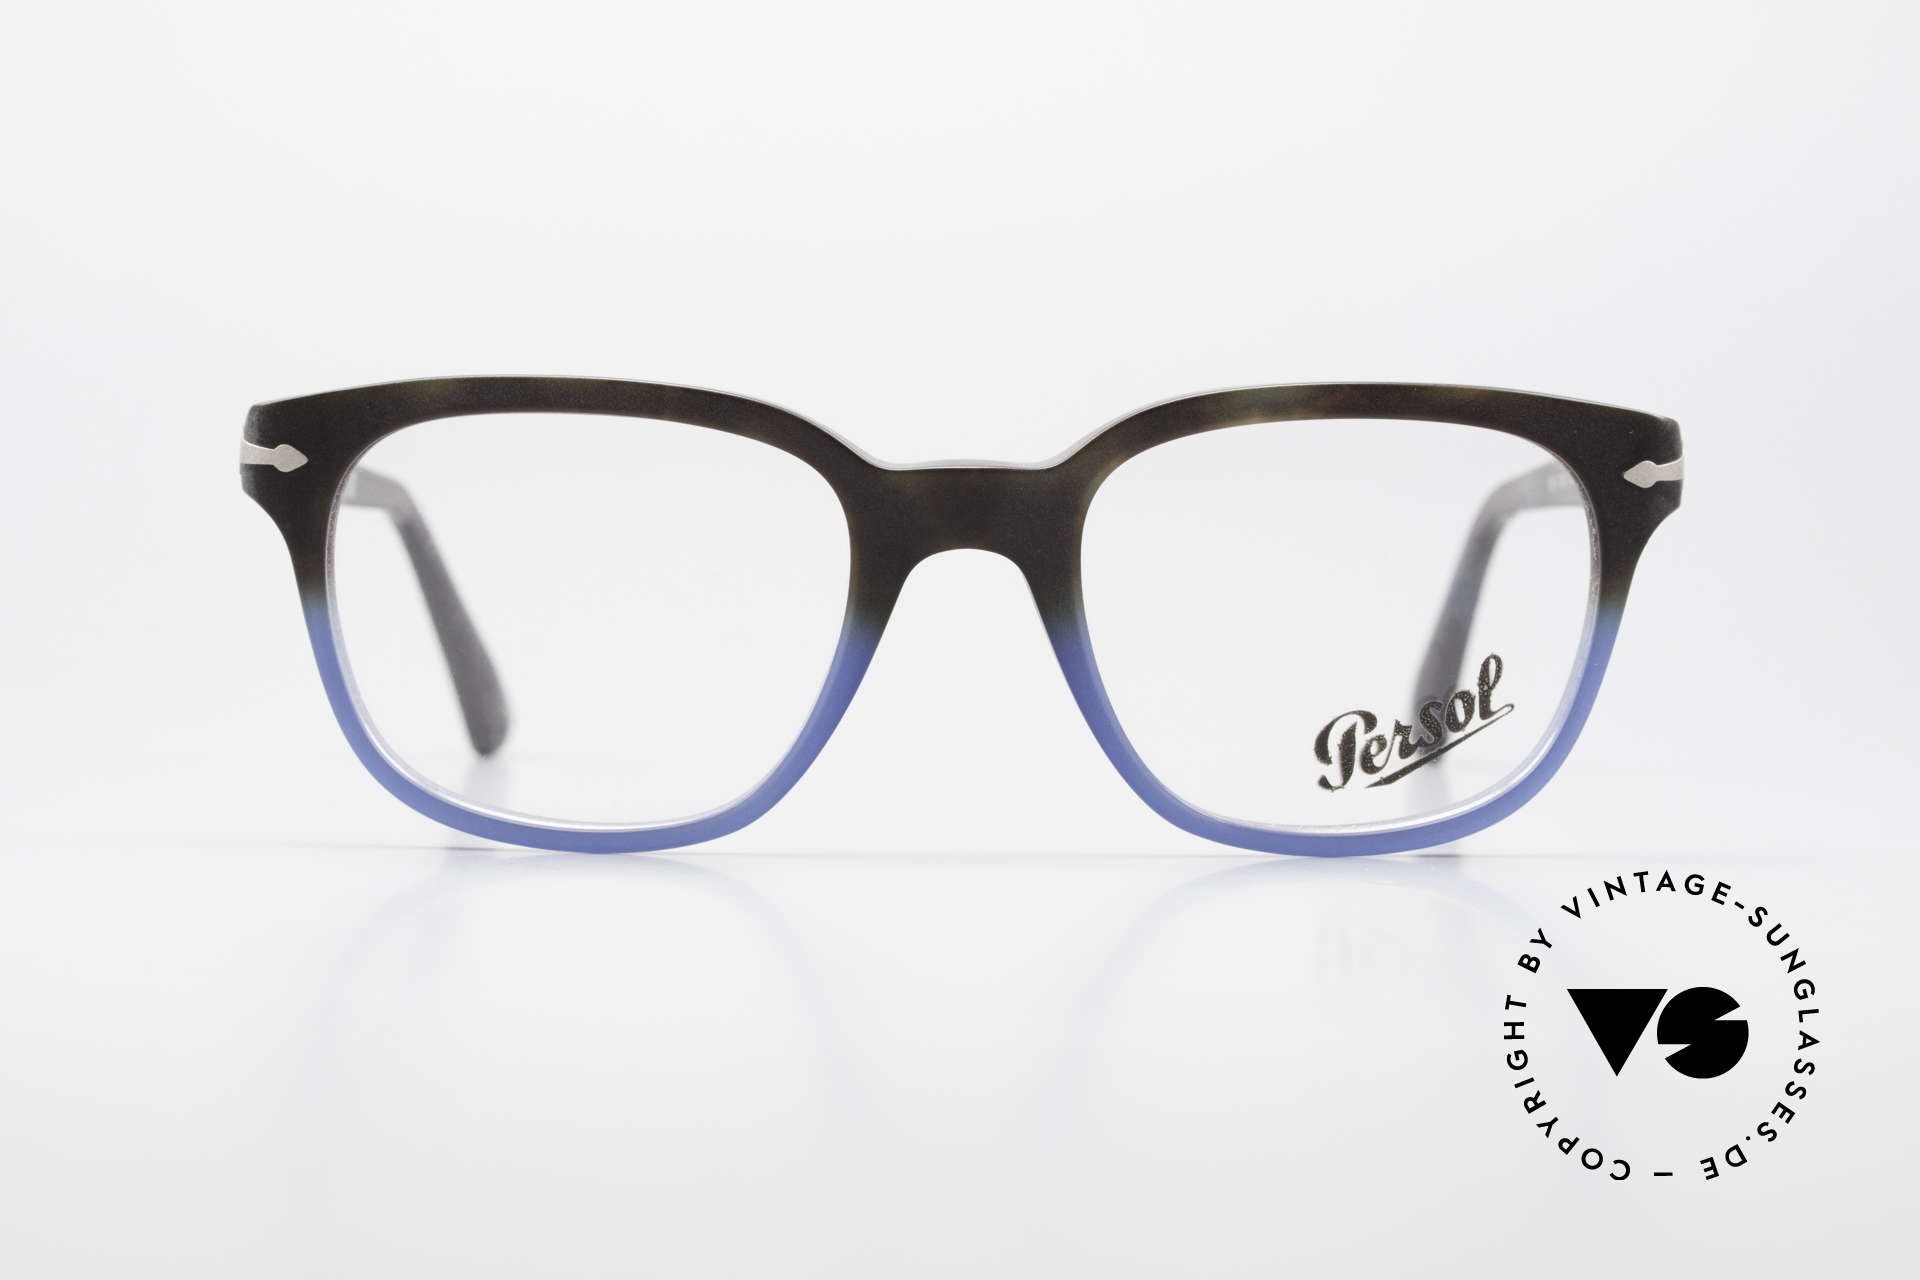 Persol 3093 Brille Für Damen und Herren, klassische Brillenform in einem zeitlosen Design, Passend für Herren und Damen